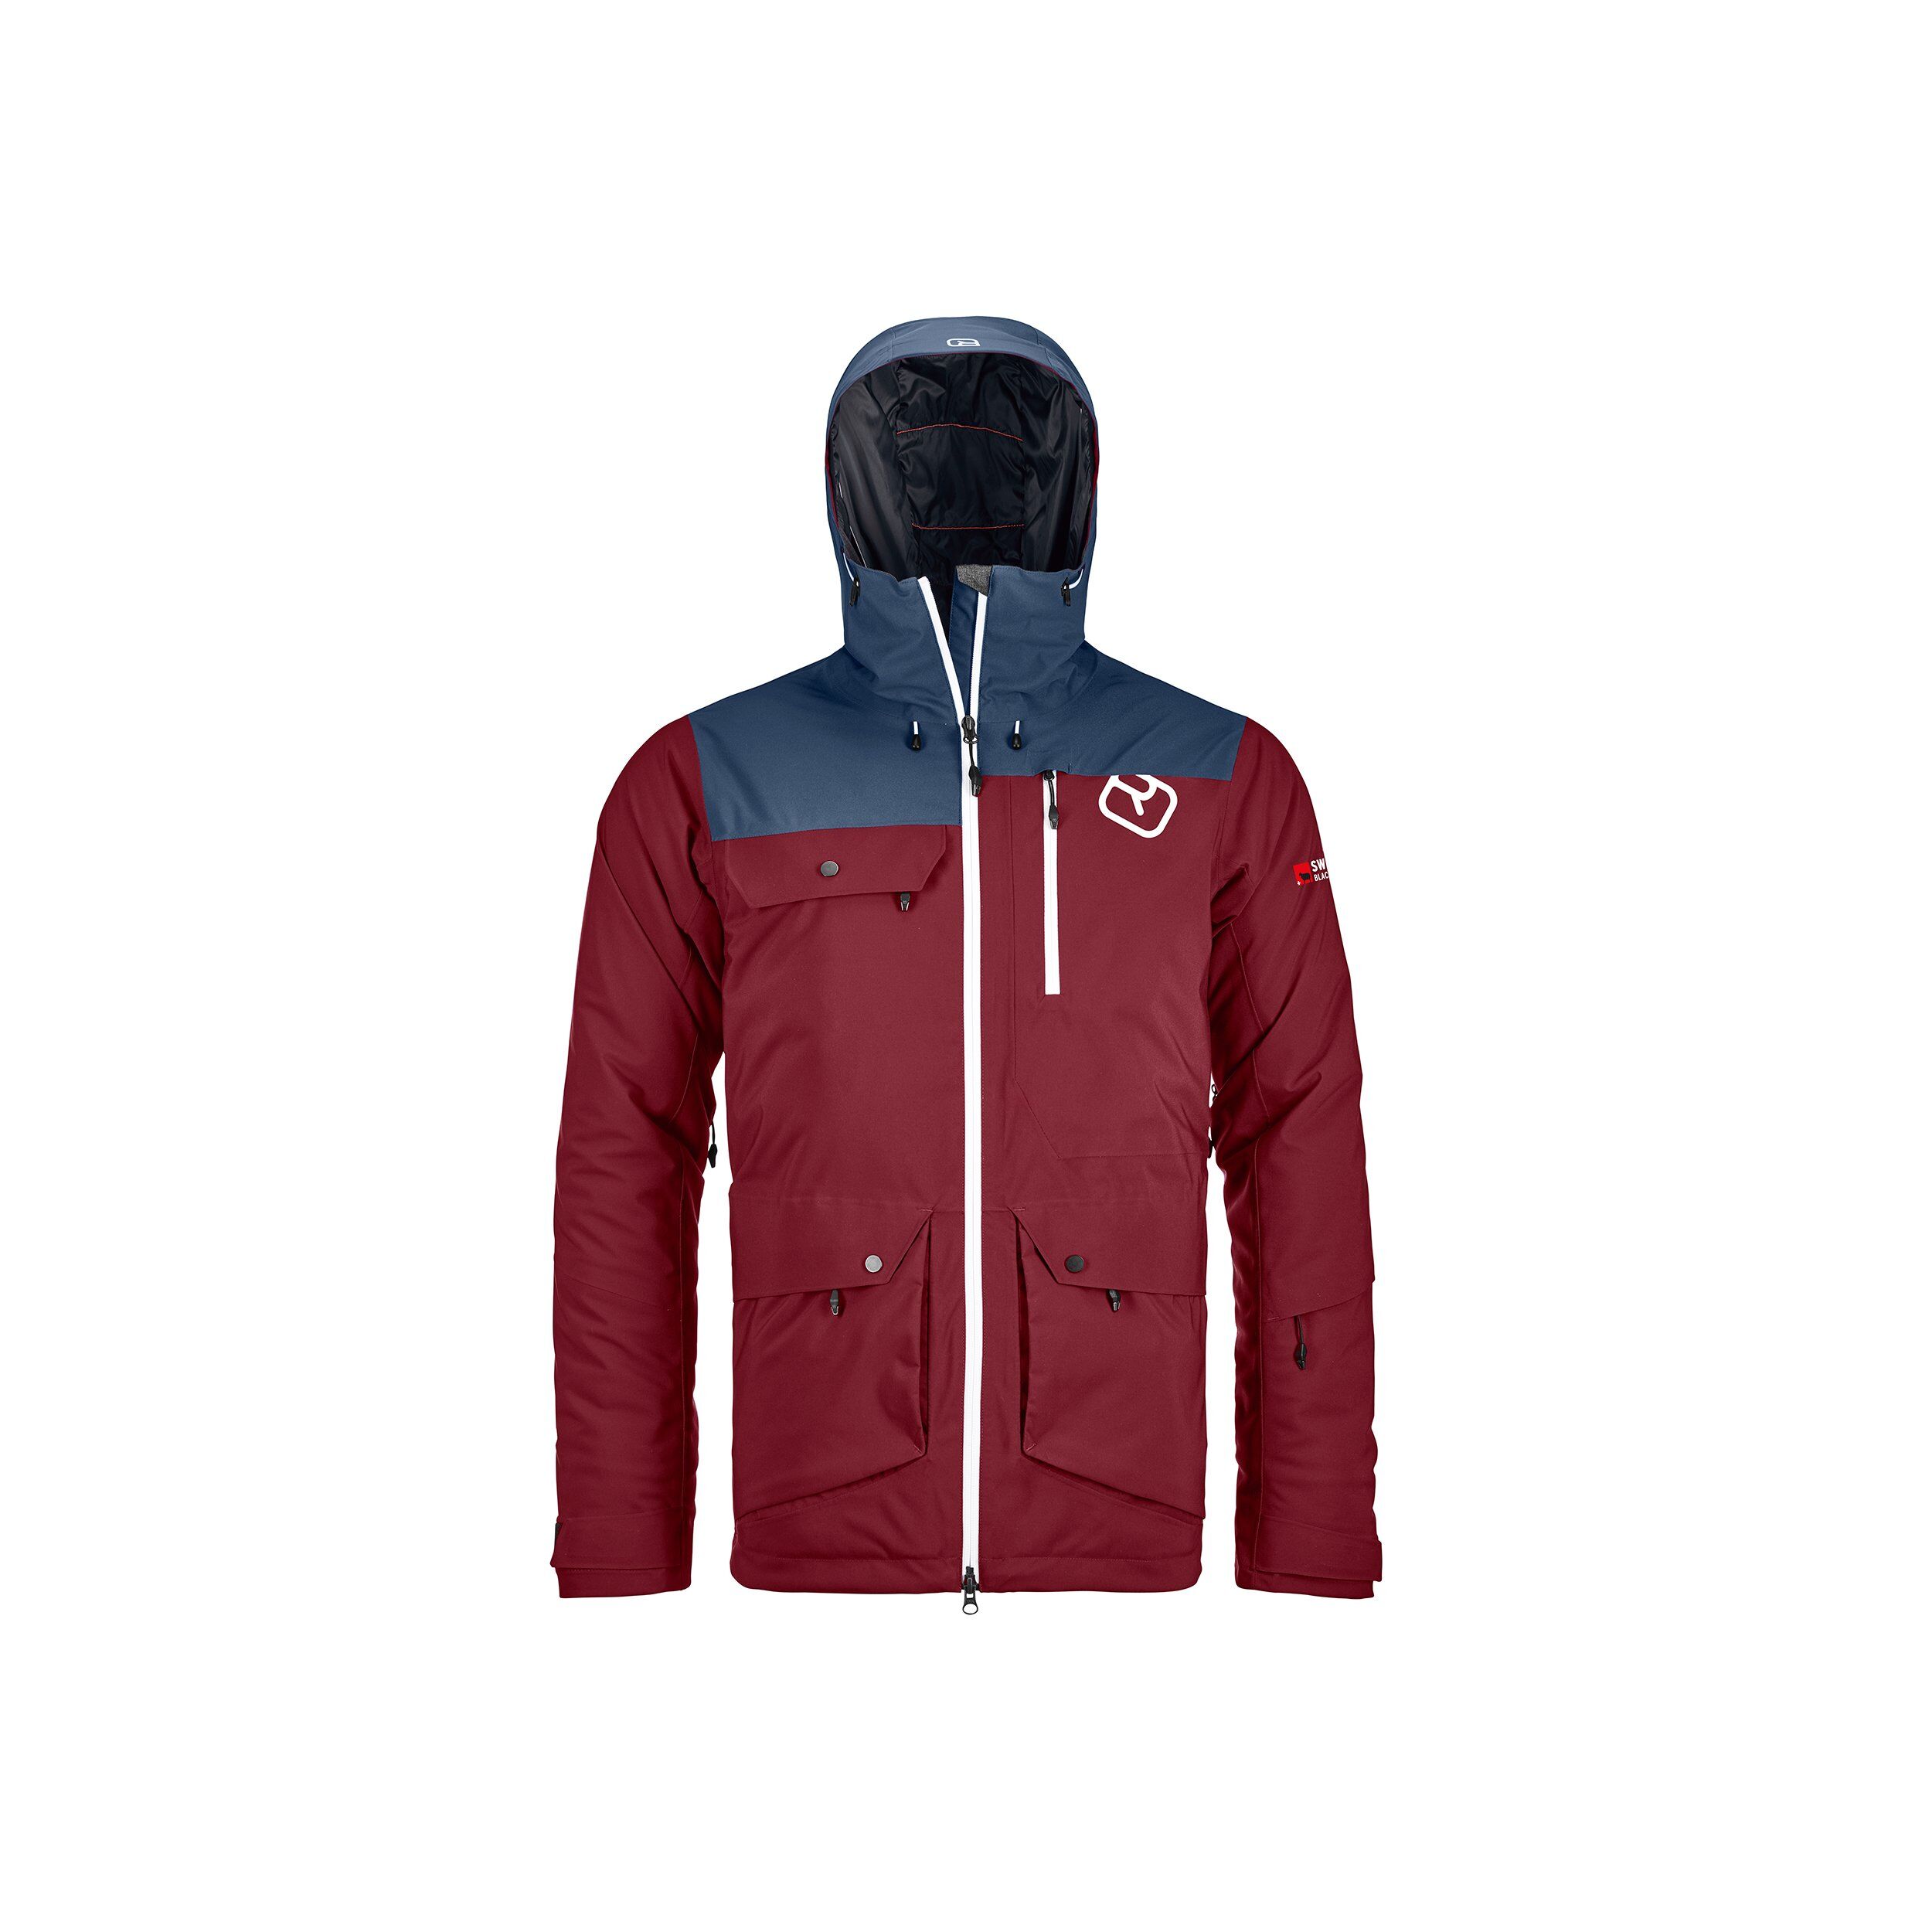 Ortovox 2L Swisswool Andermatt Jacket - Ski jacket - Men's